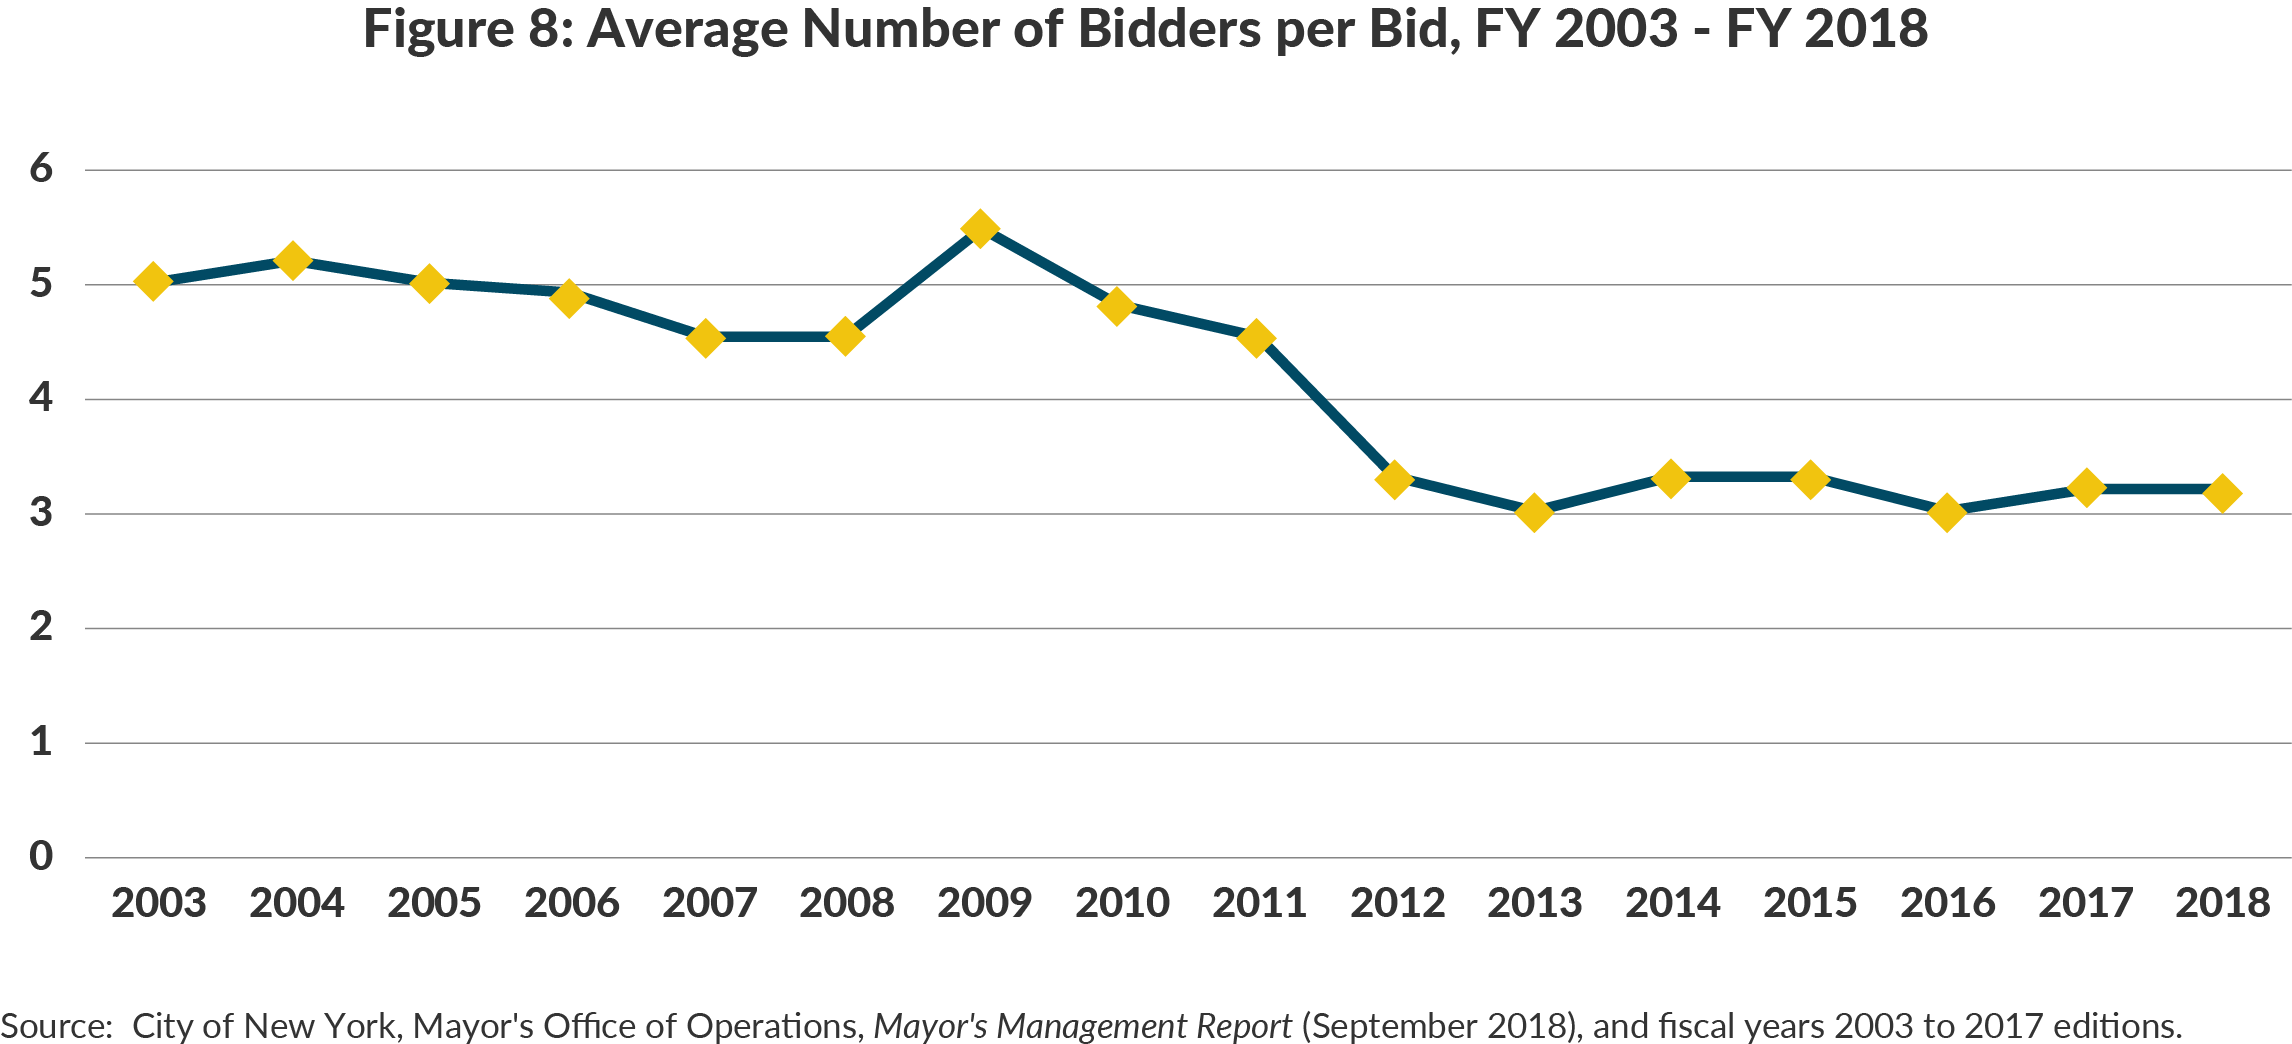 Figure 8: Average Number of Bidders per Bid, FY 2003 - FY 2018